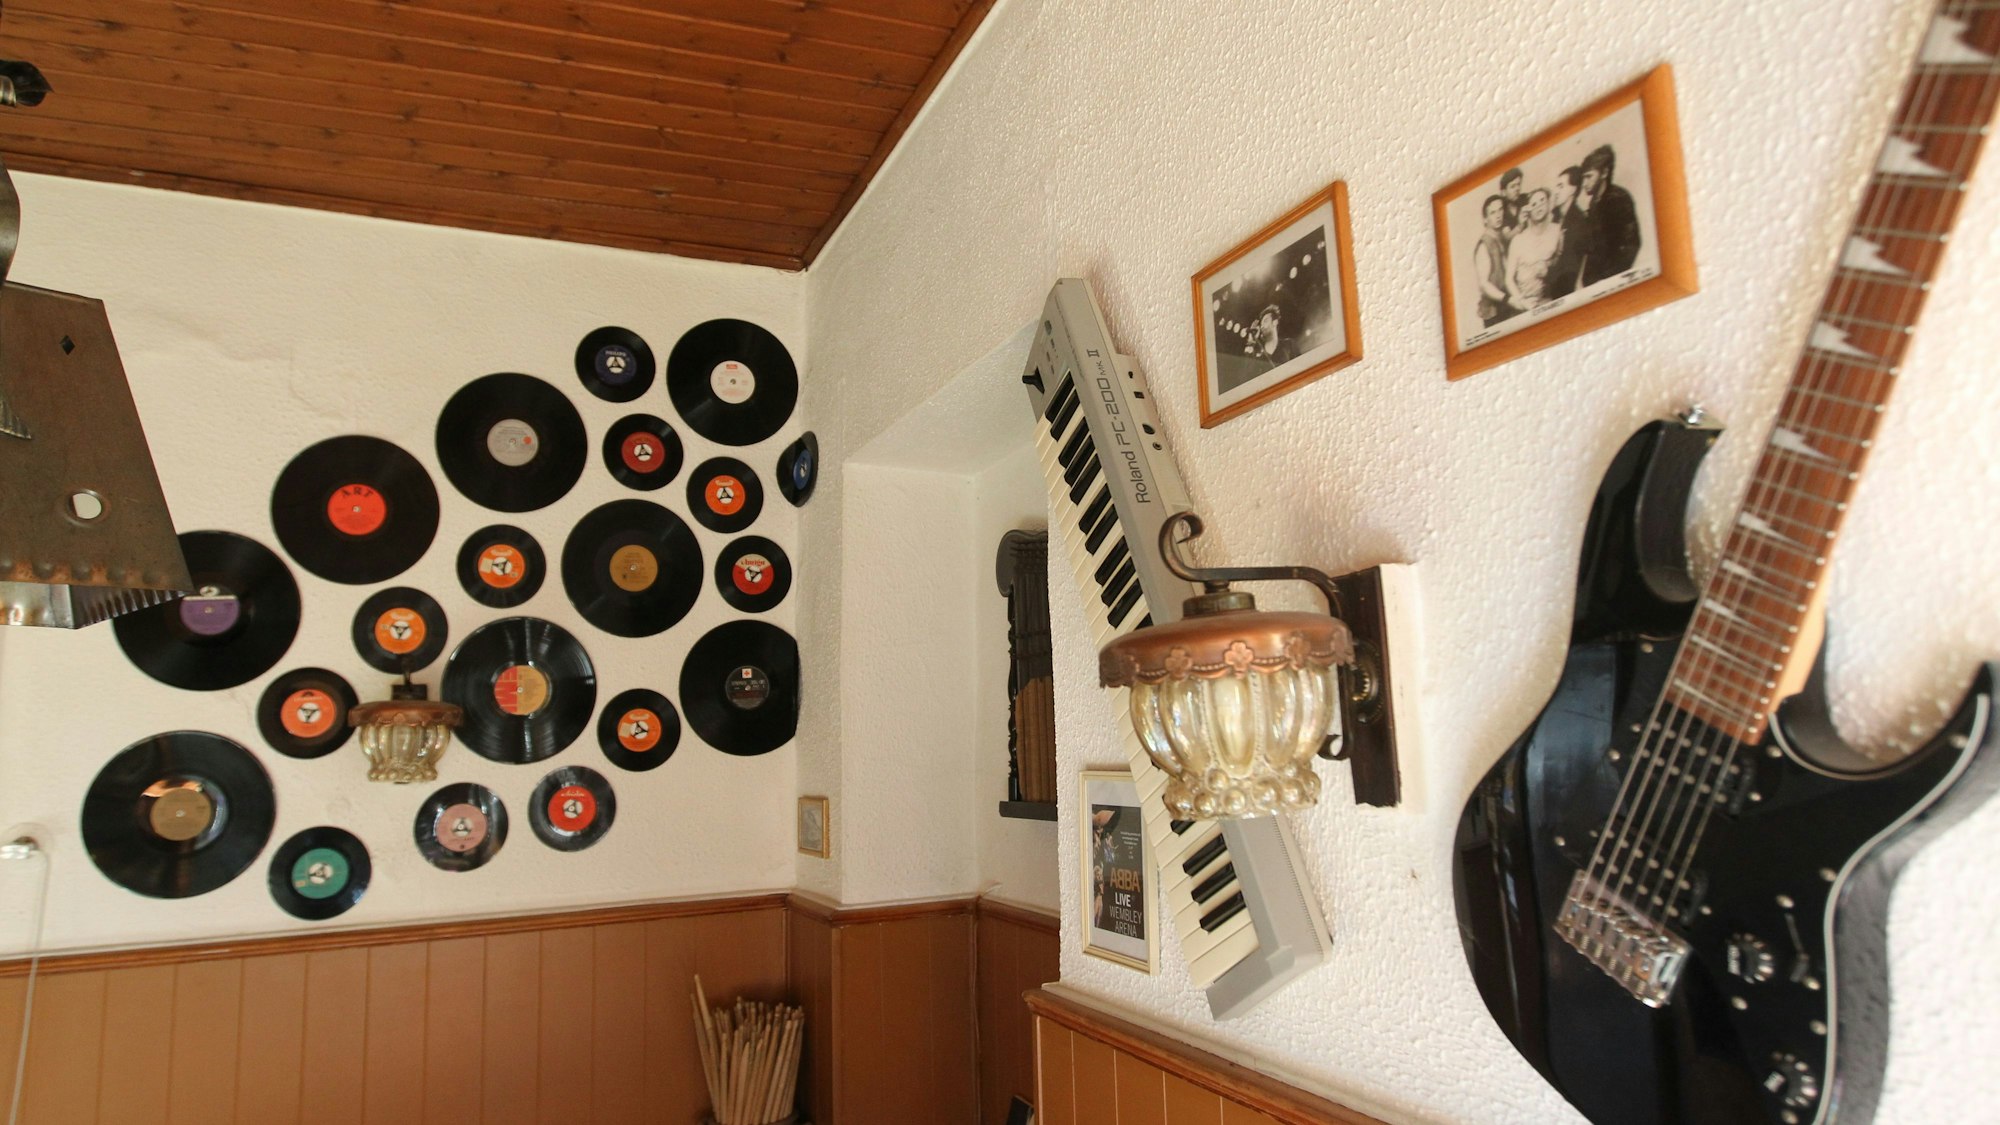 Instrumente, Schallplatten und jede Menge Bandplakate schmücken die Wände der Kneipe.